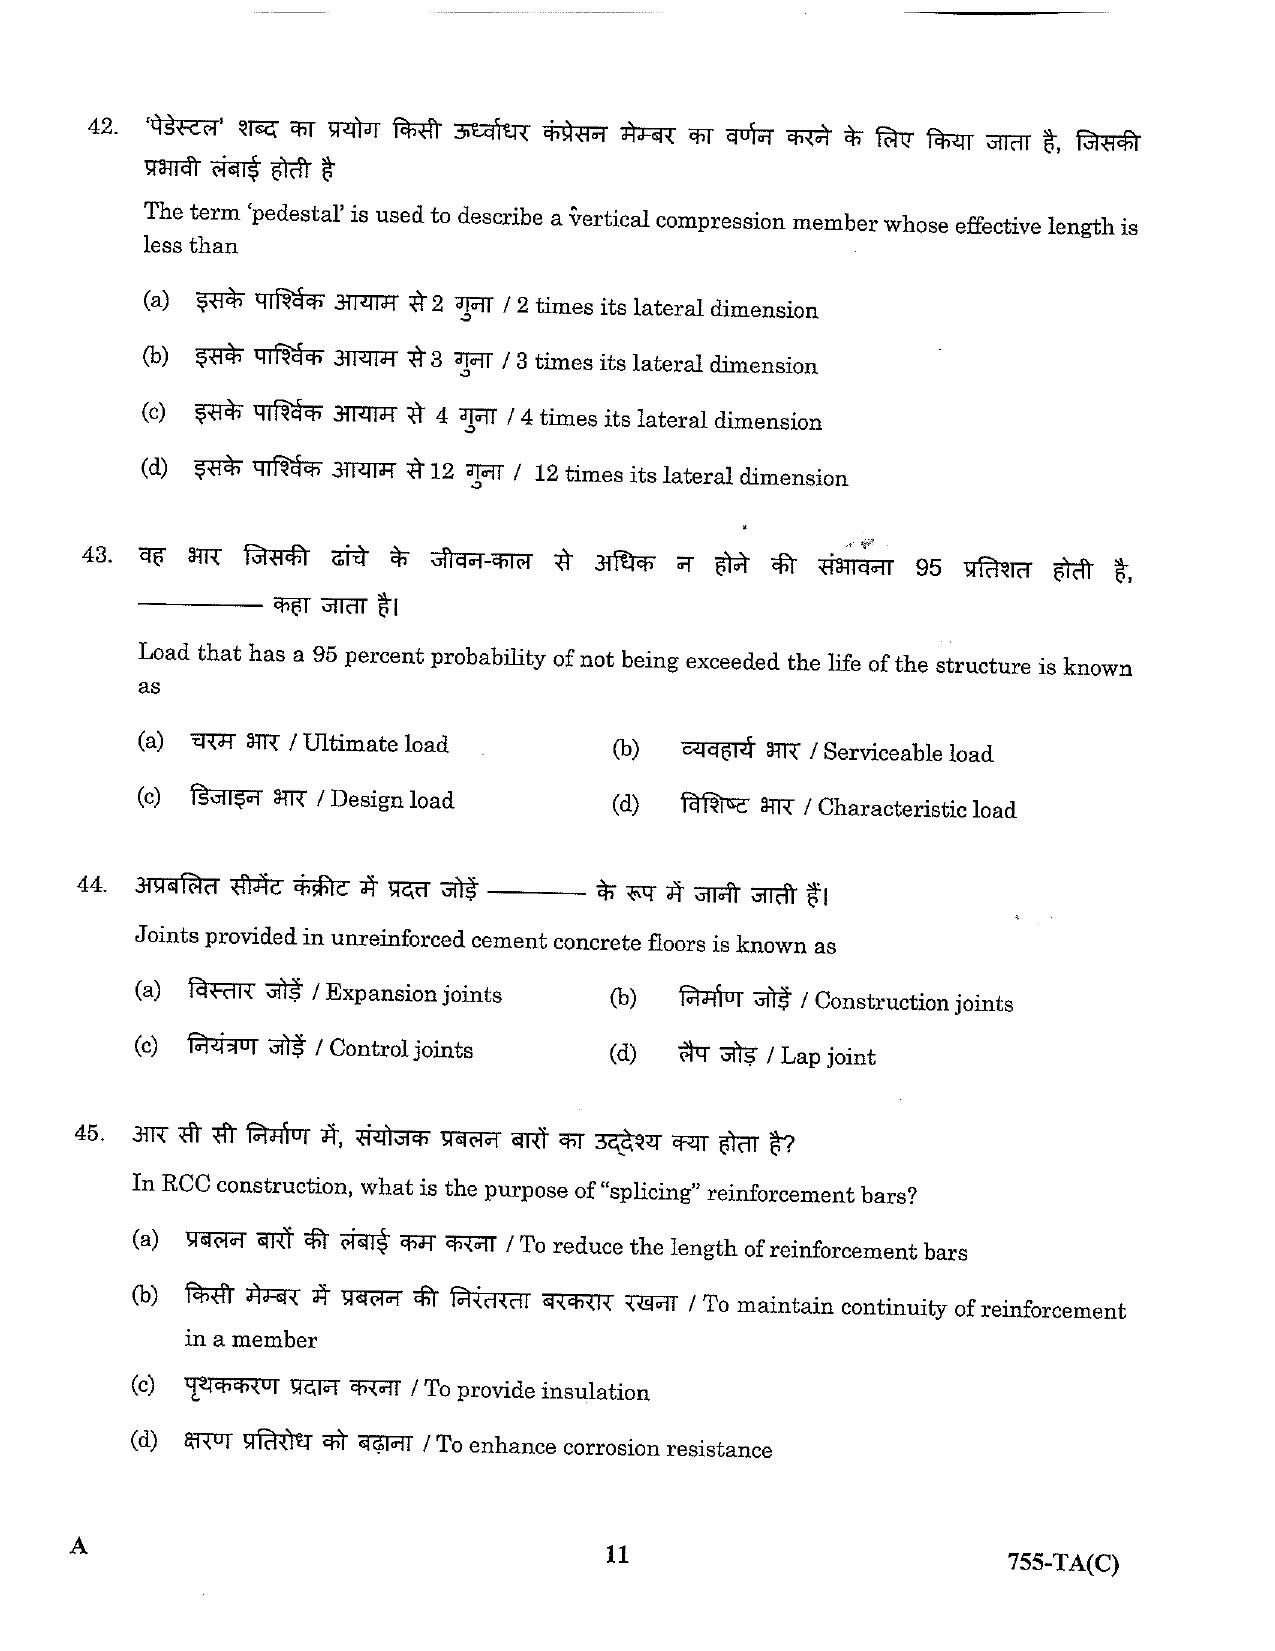 LPSC Technical Assistant (Civil) 2023 Question Paper - Page 11